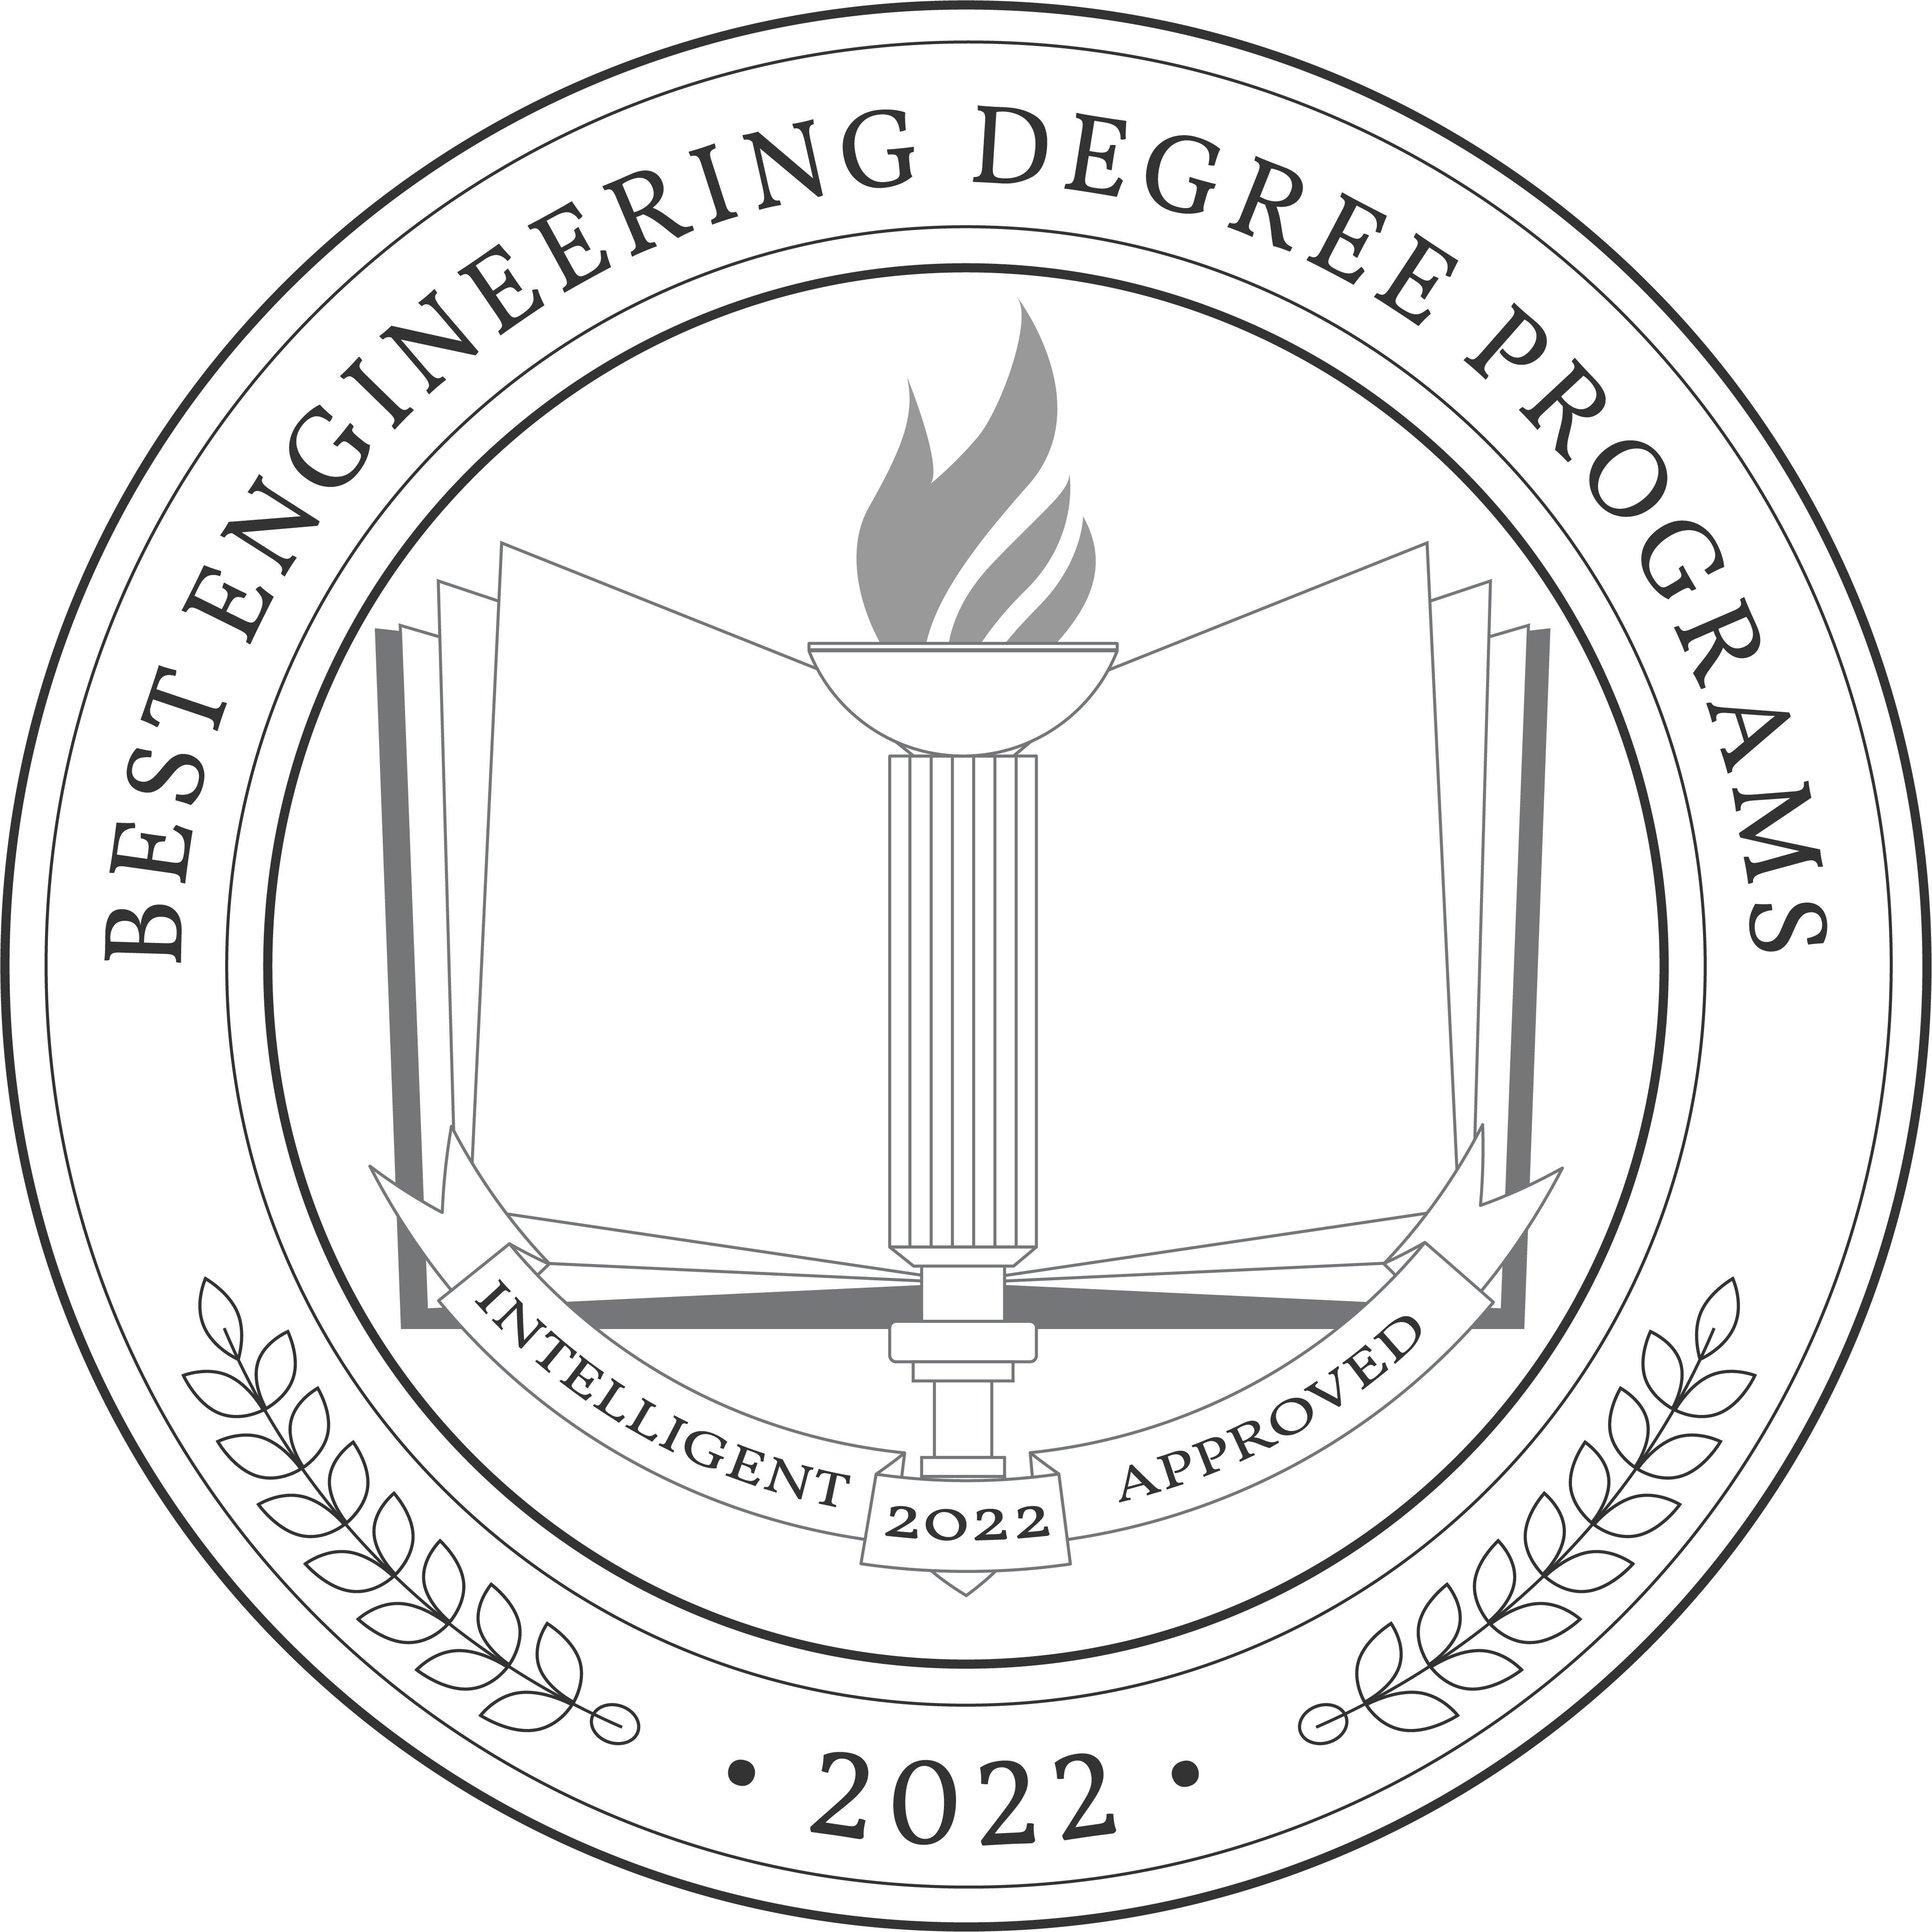 Best Engineering Degree Programs